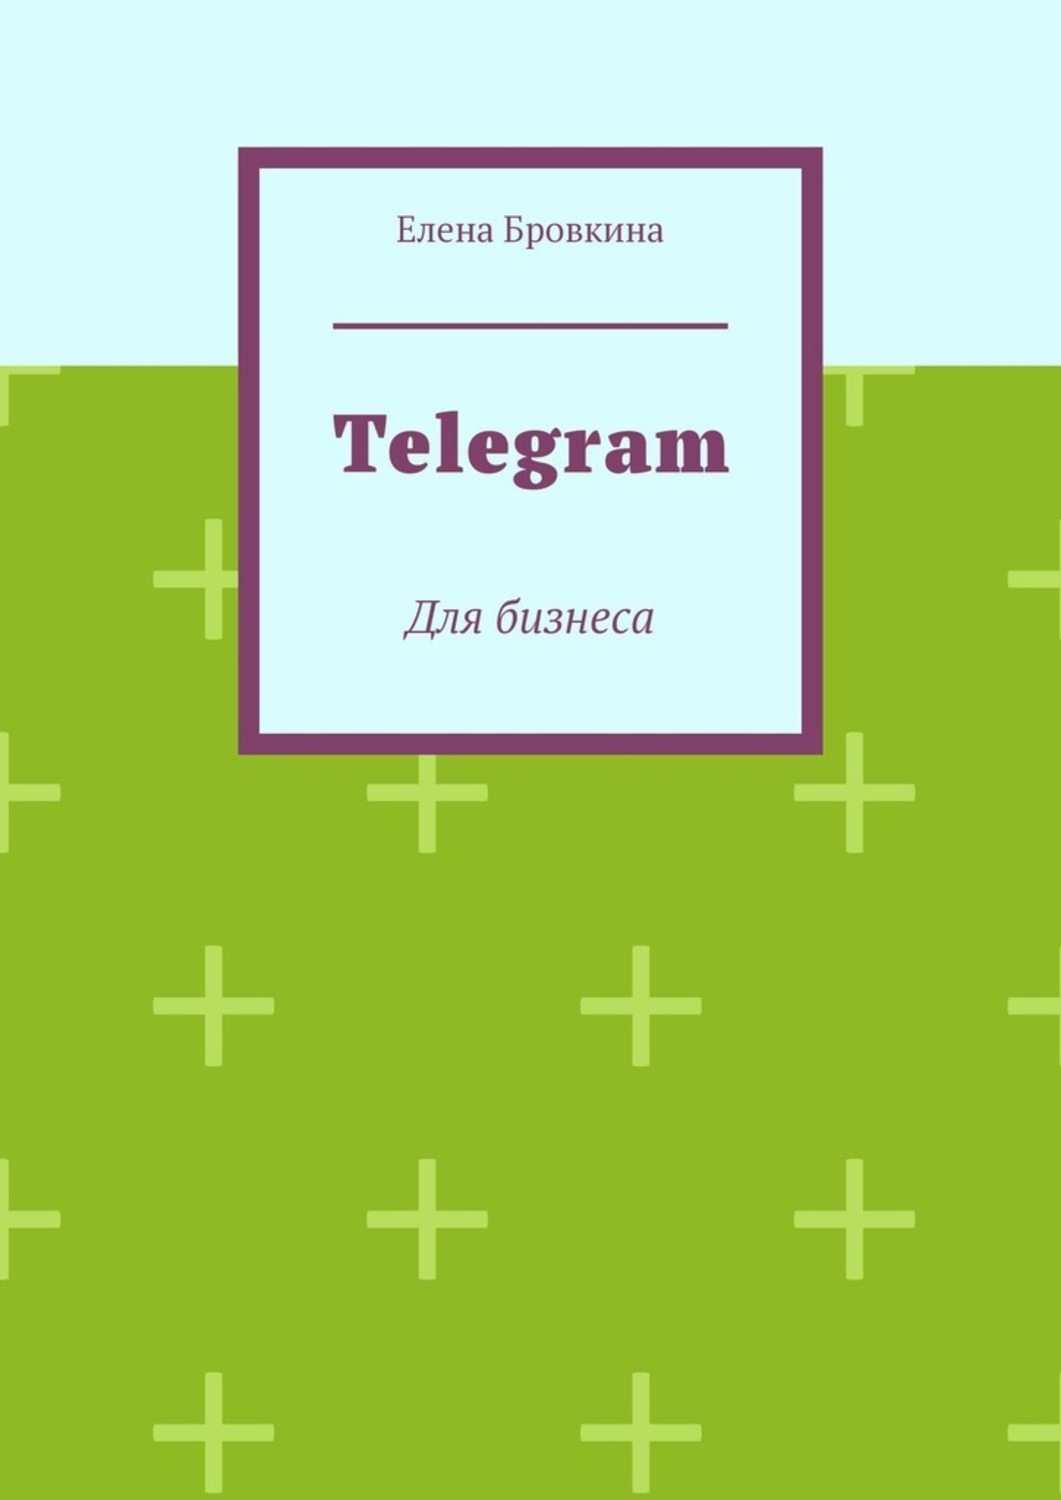 Читать книги телеграмм бесплатно фото 25